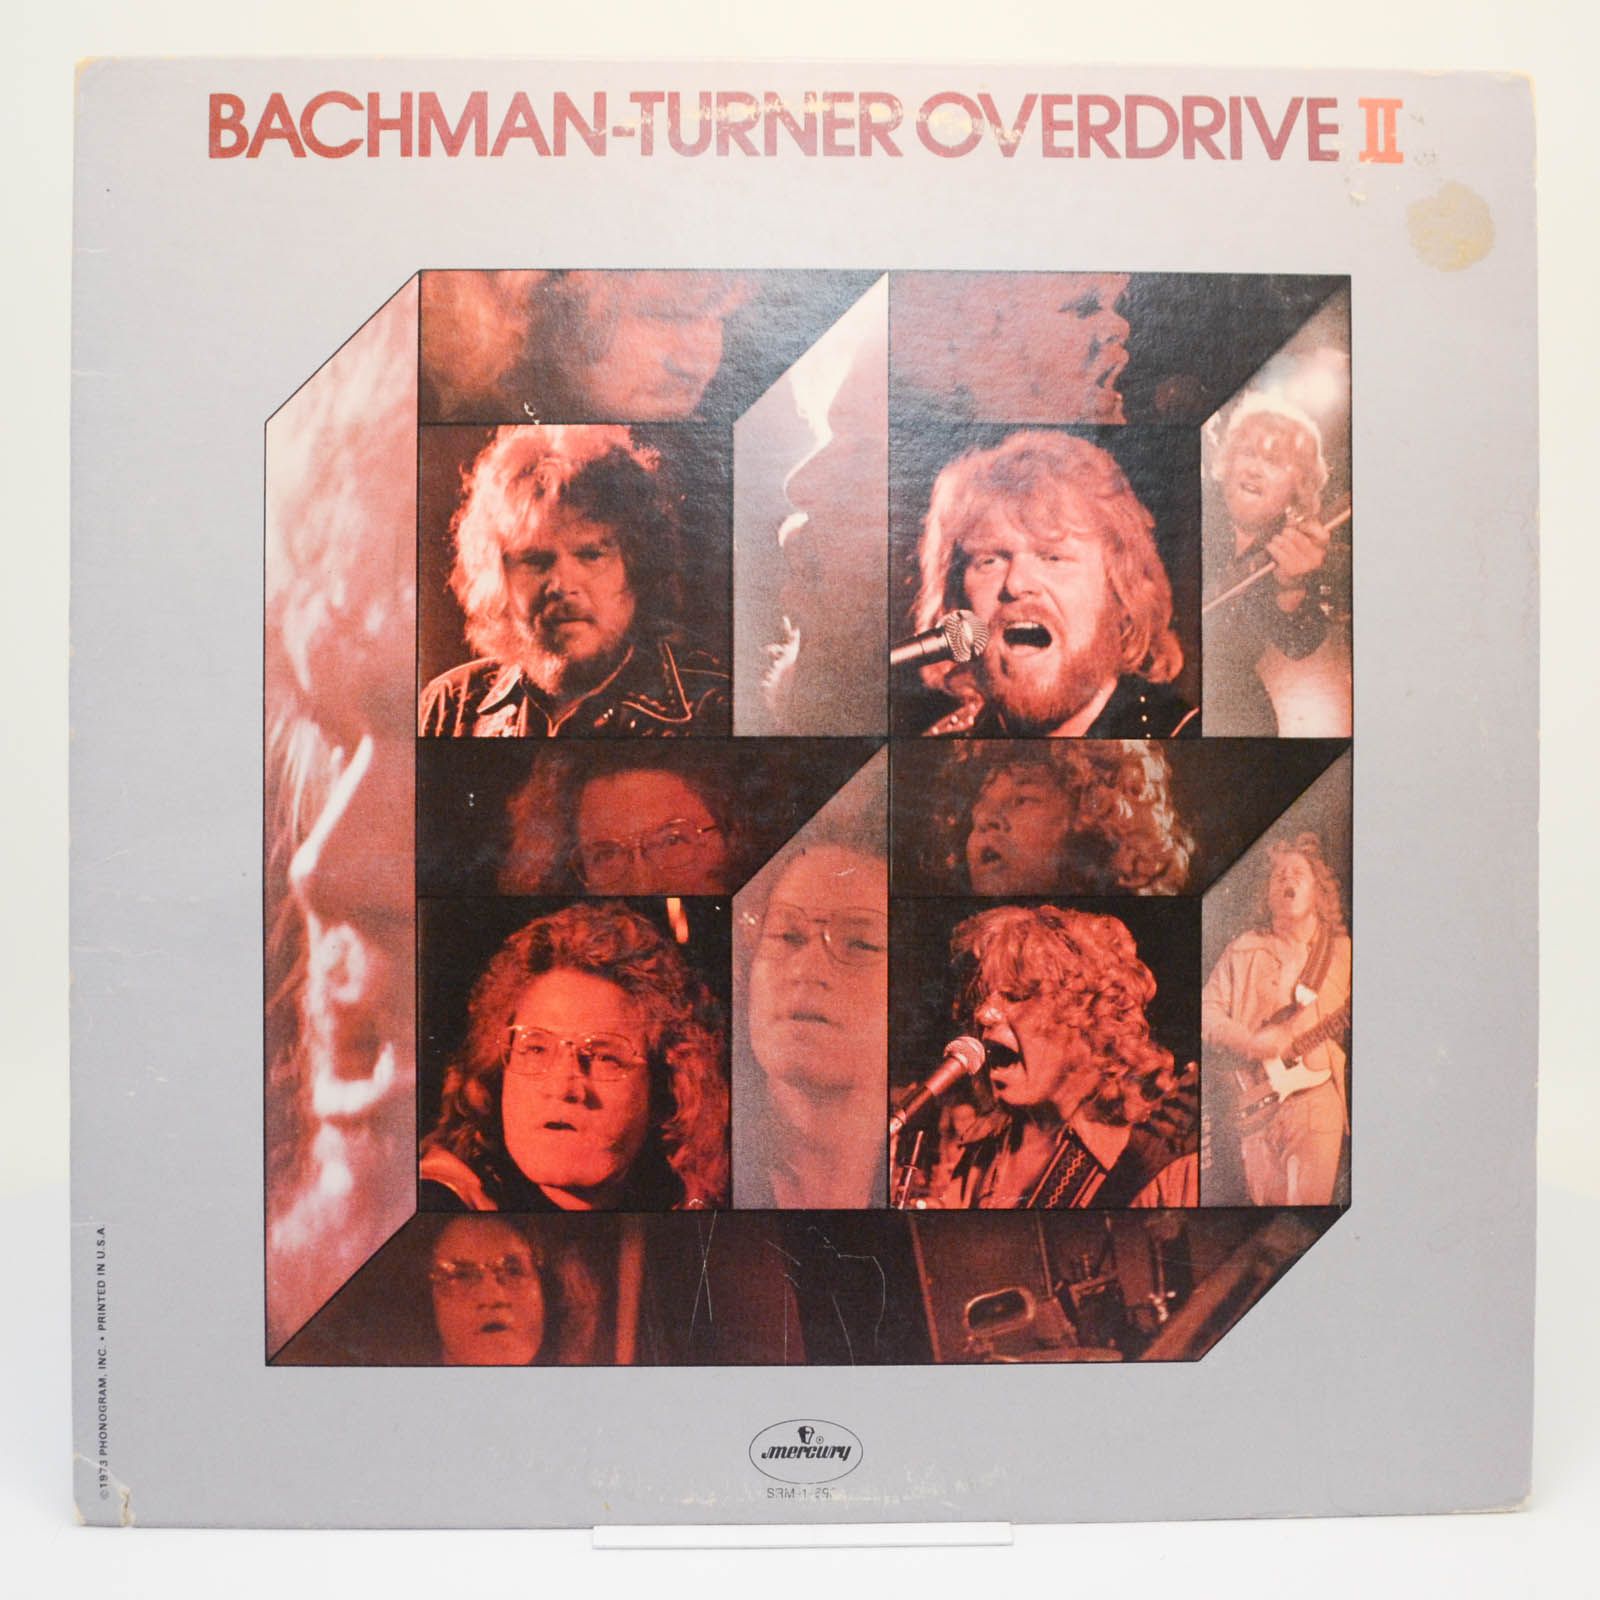 Bachman-Turner Overdrive — Bachman-Turner Overdrive II, 1974